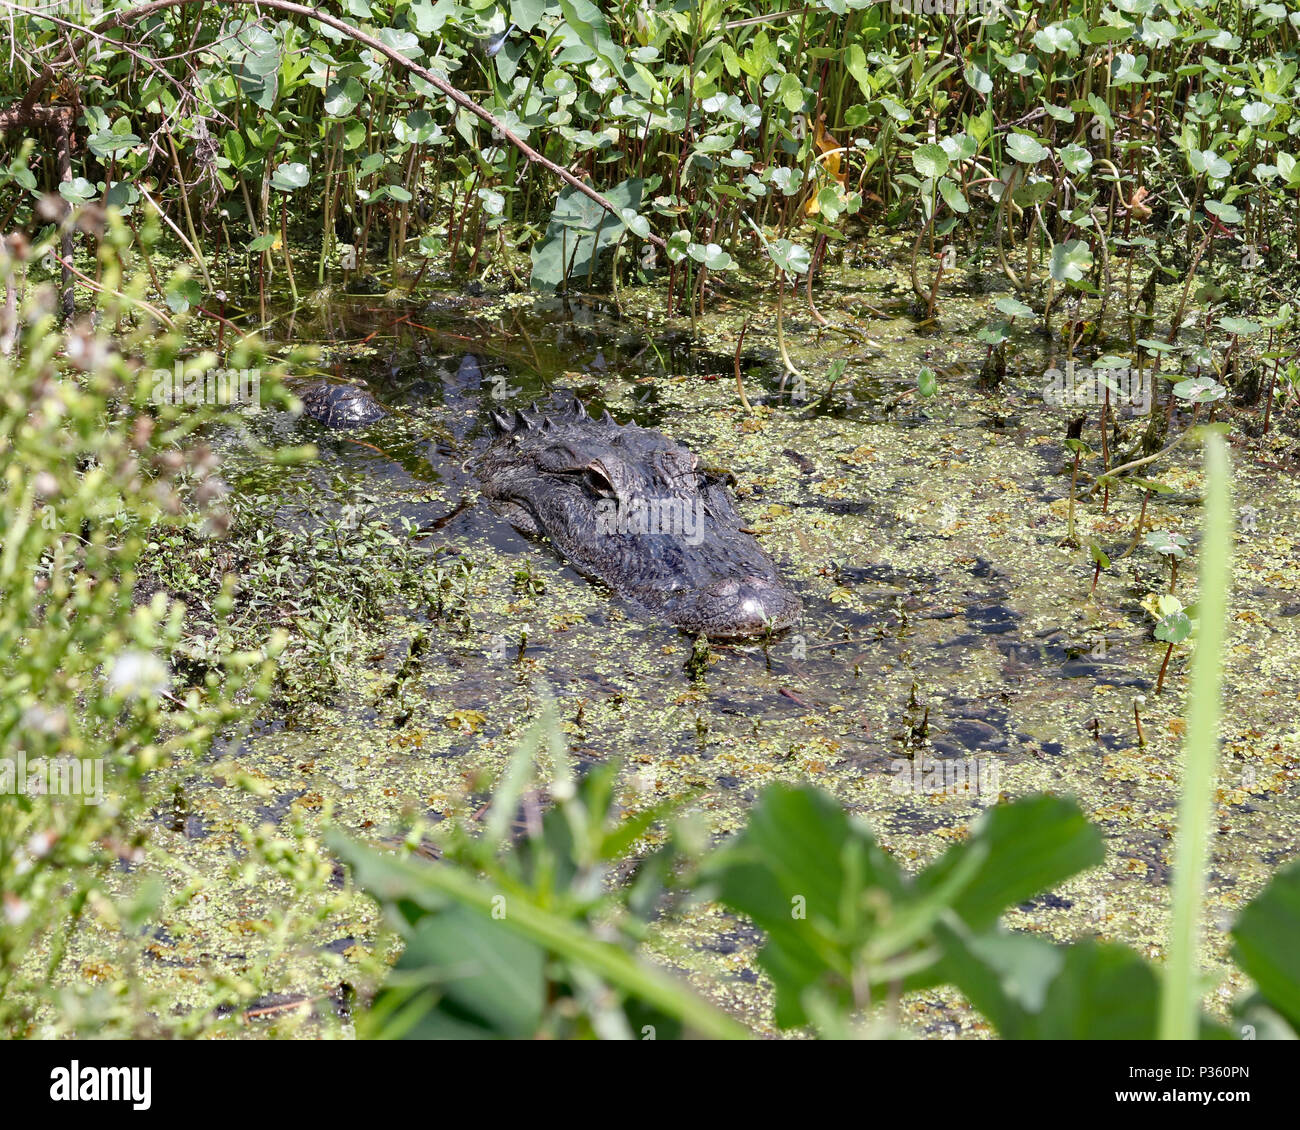 American Alligator hidden in swampy marsh waters Stock Photo